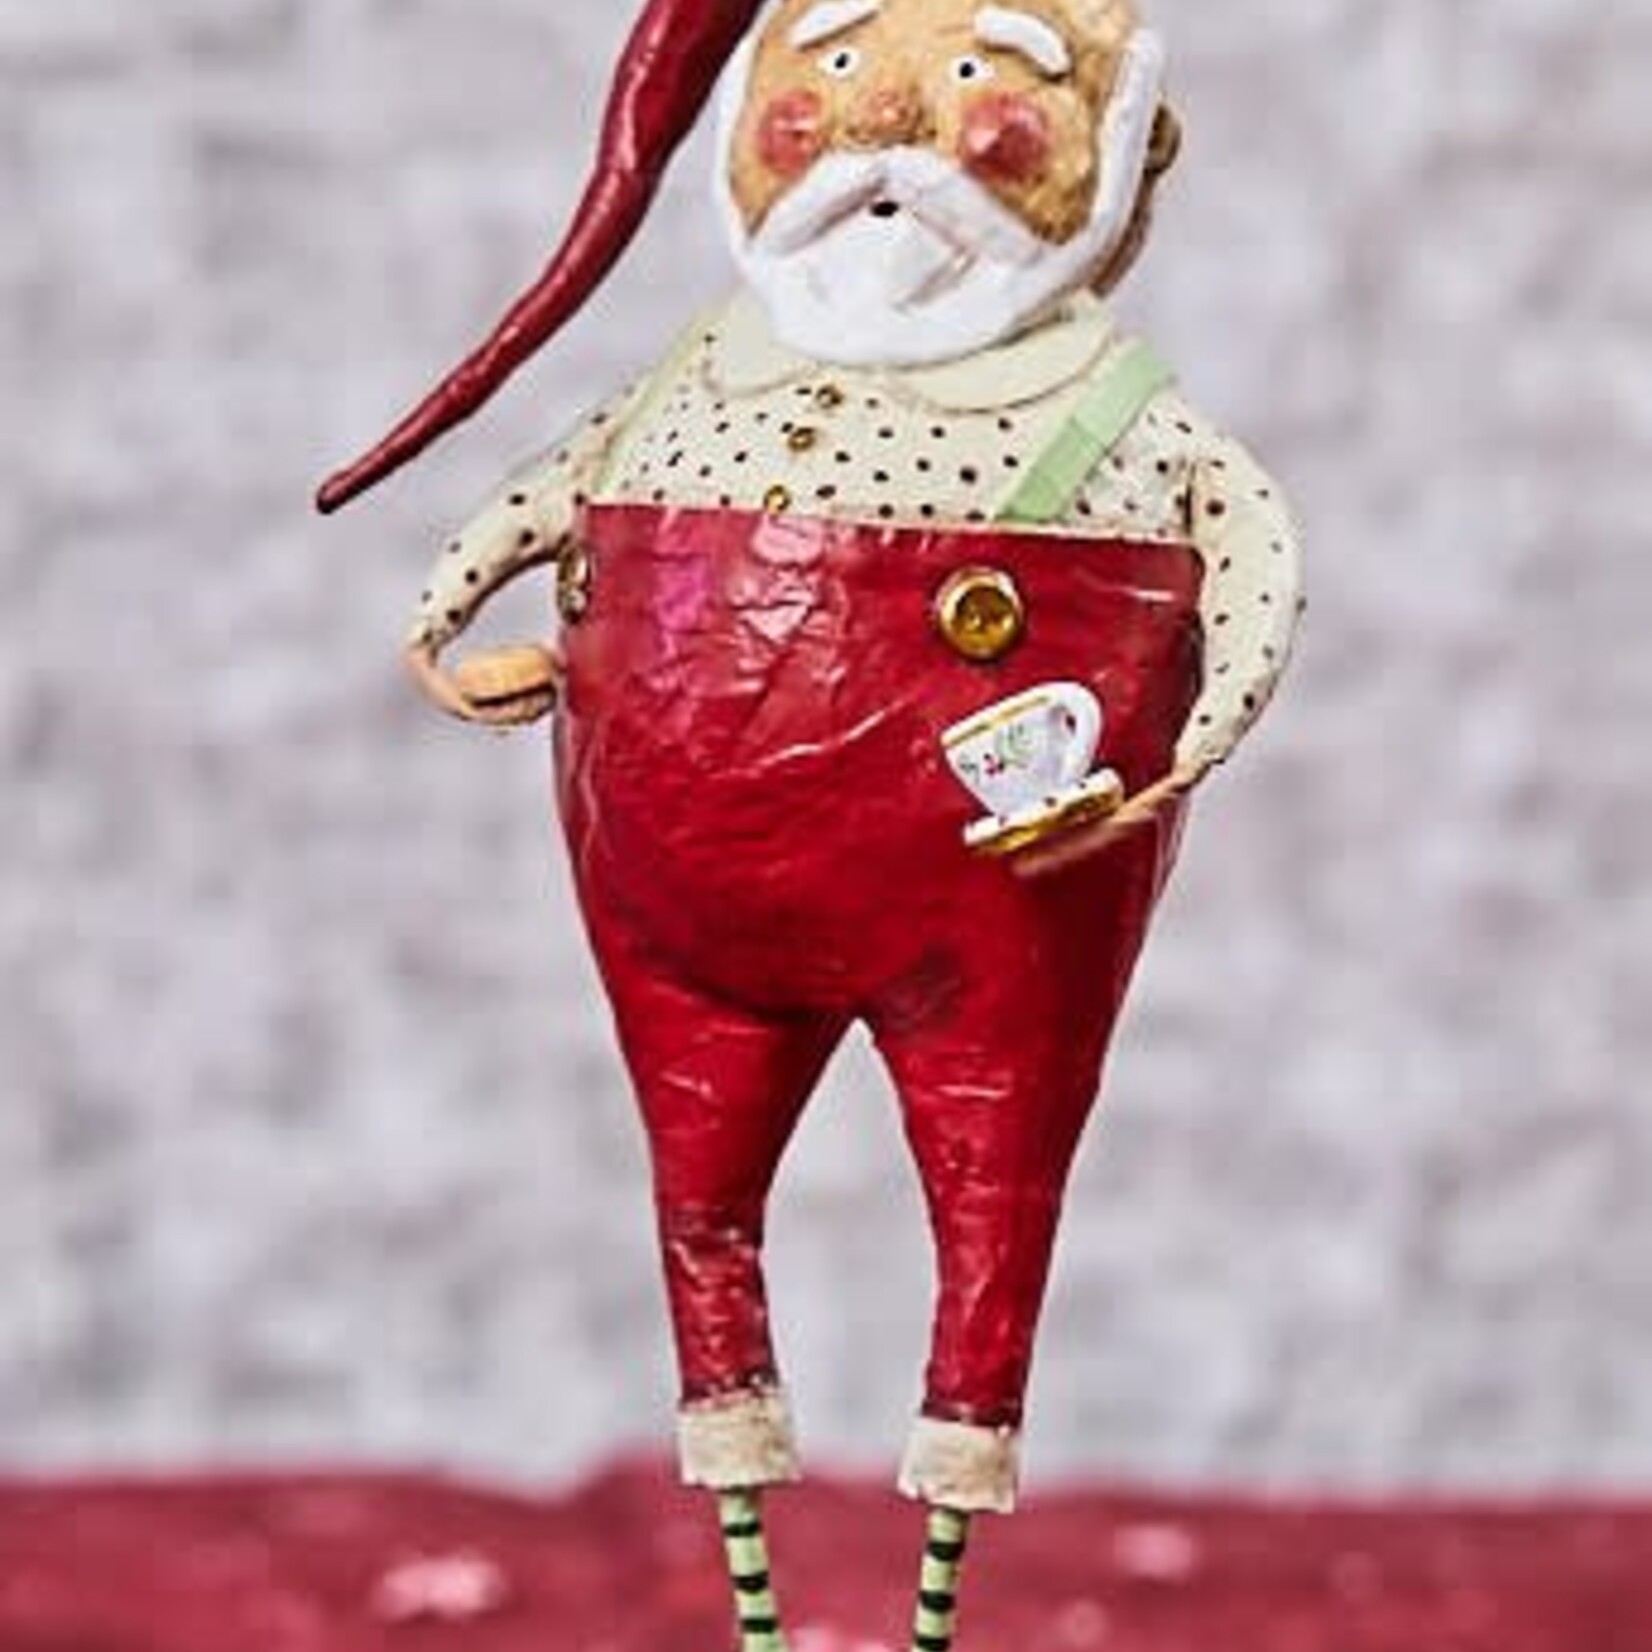 ESC & Company "Mr. Claus" Figurine